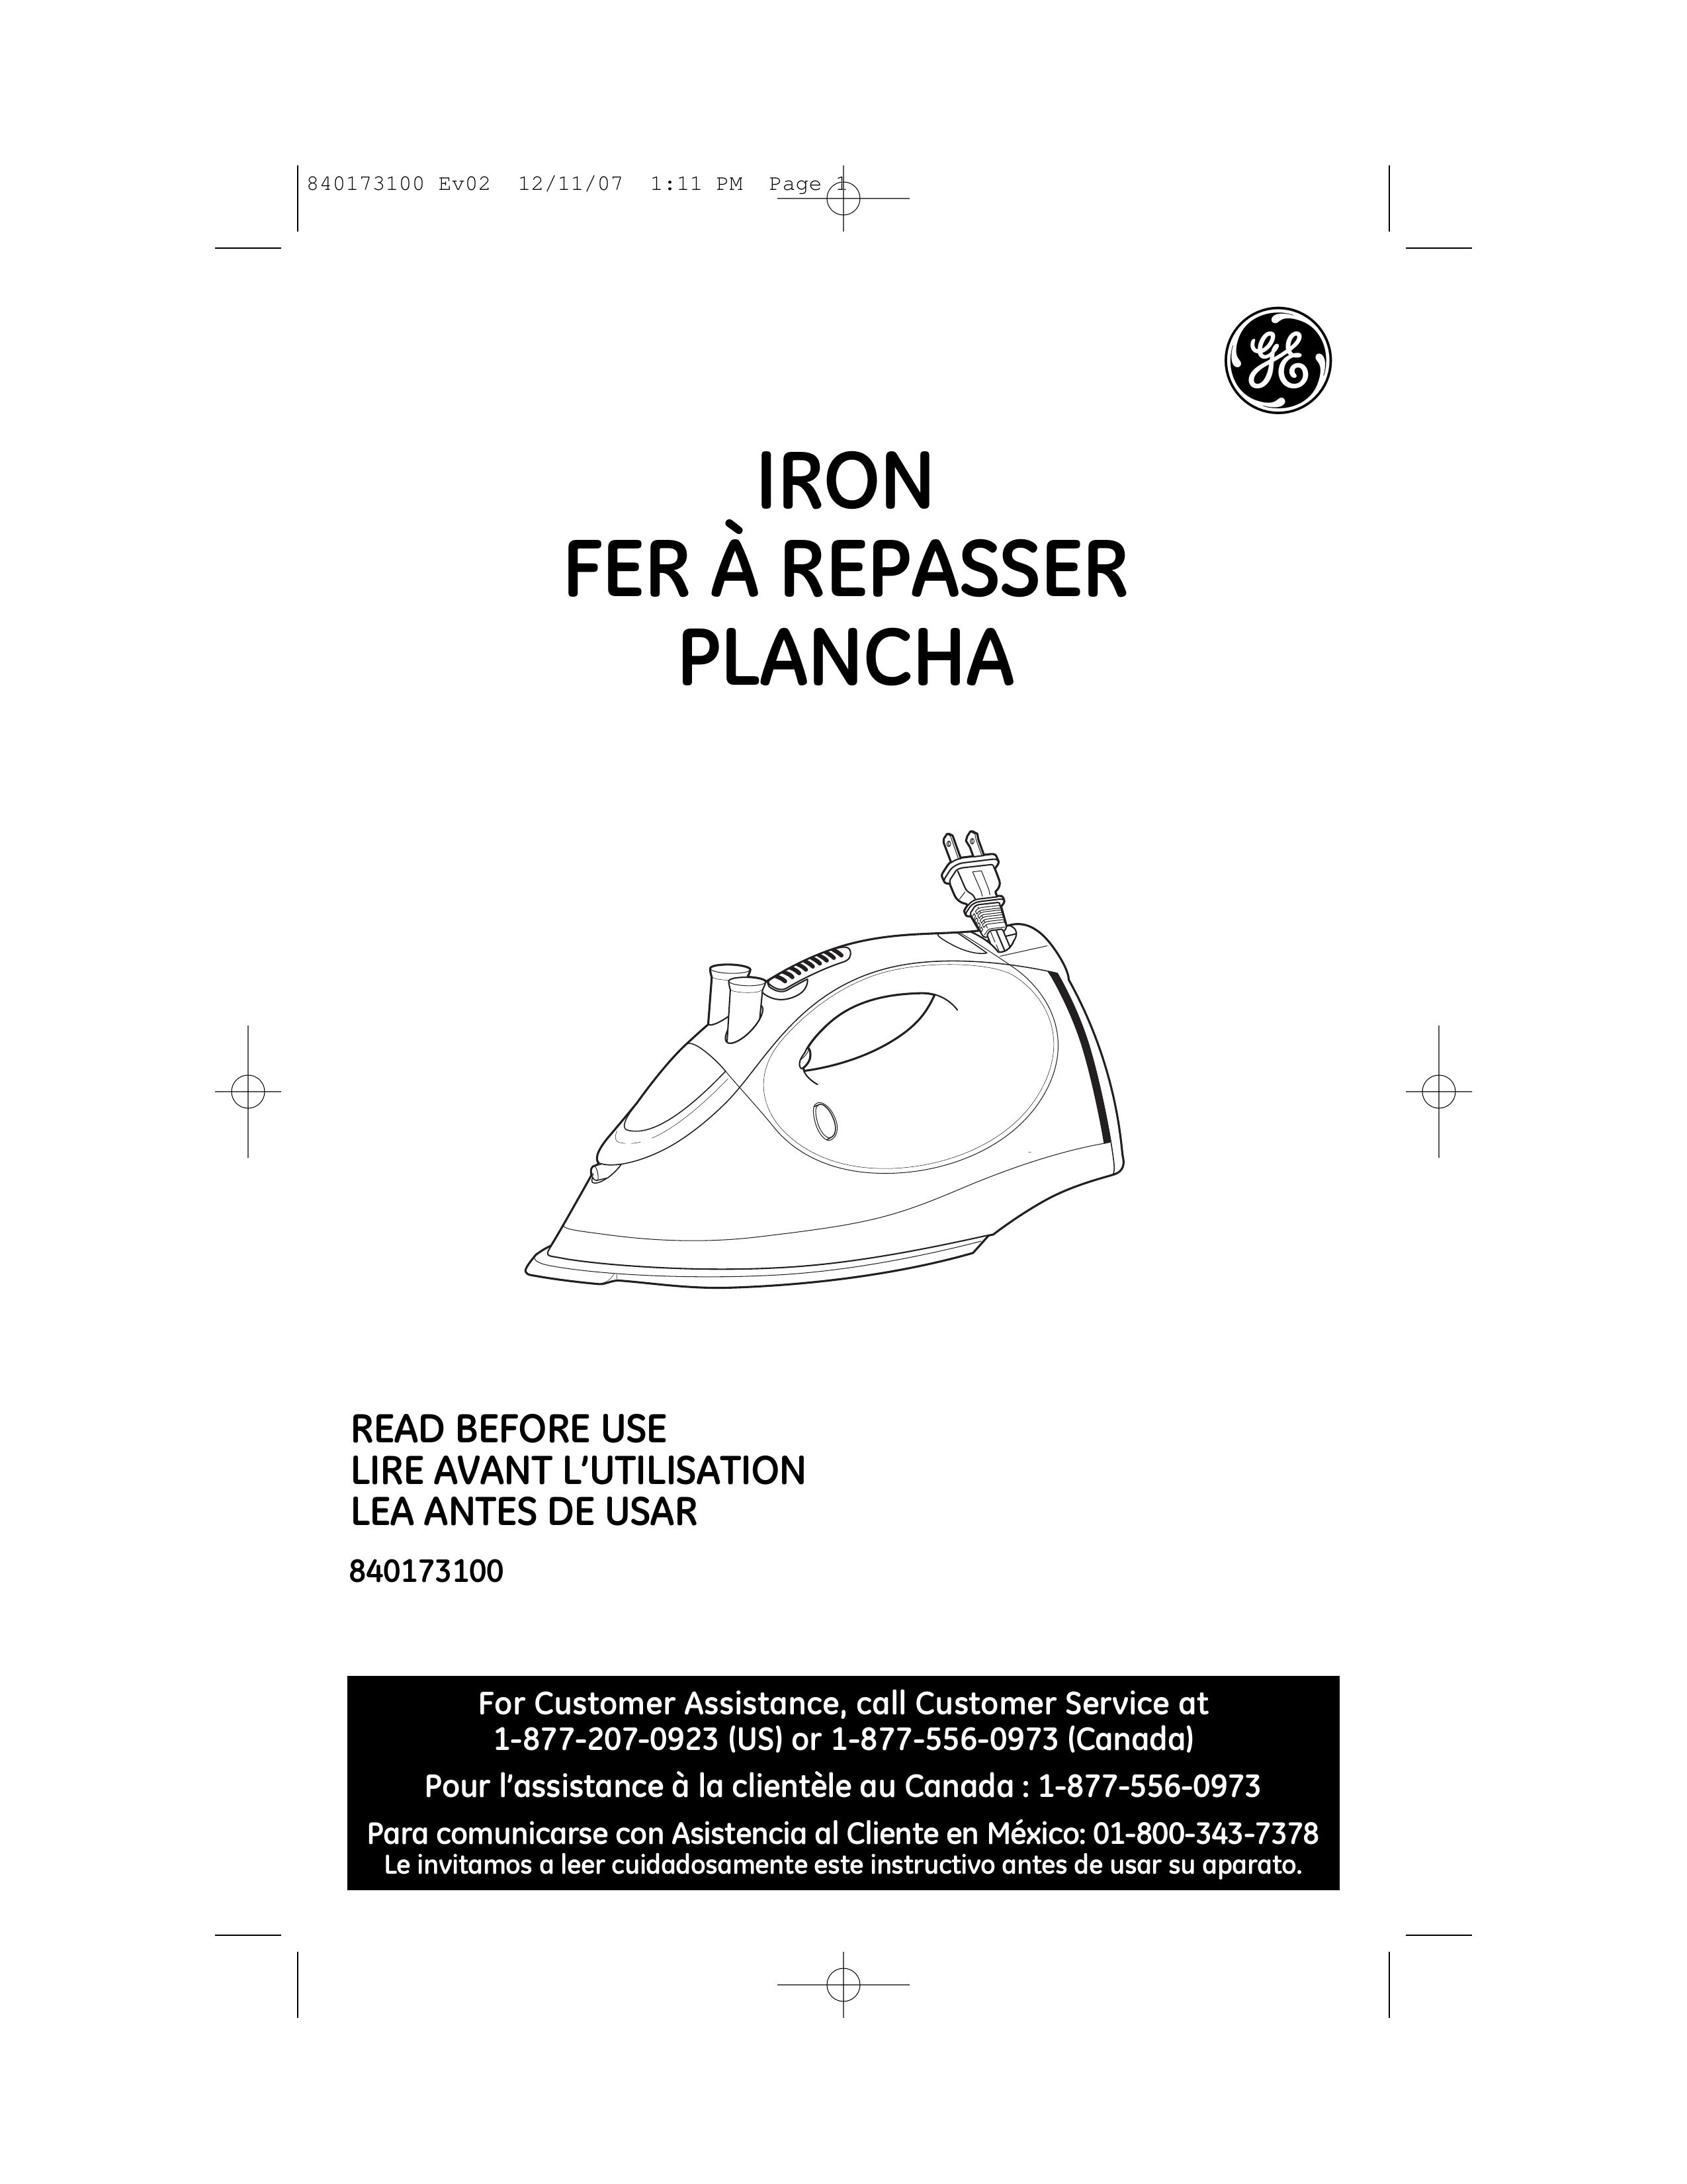 GE 840173100 Iron User Manual